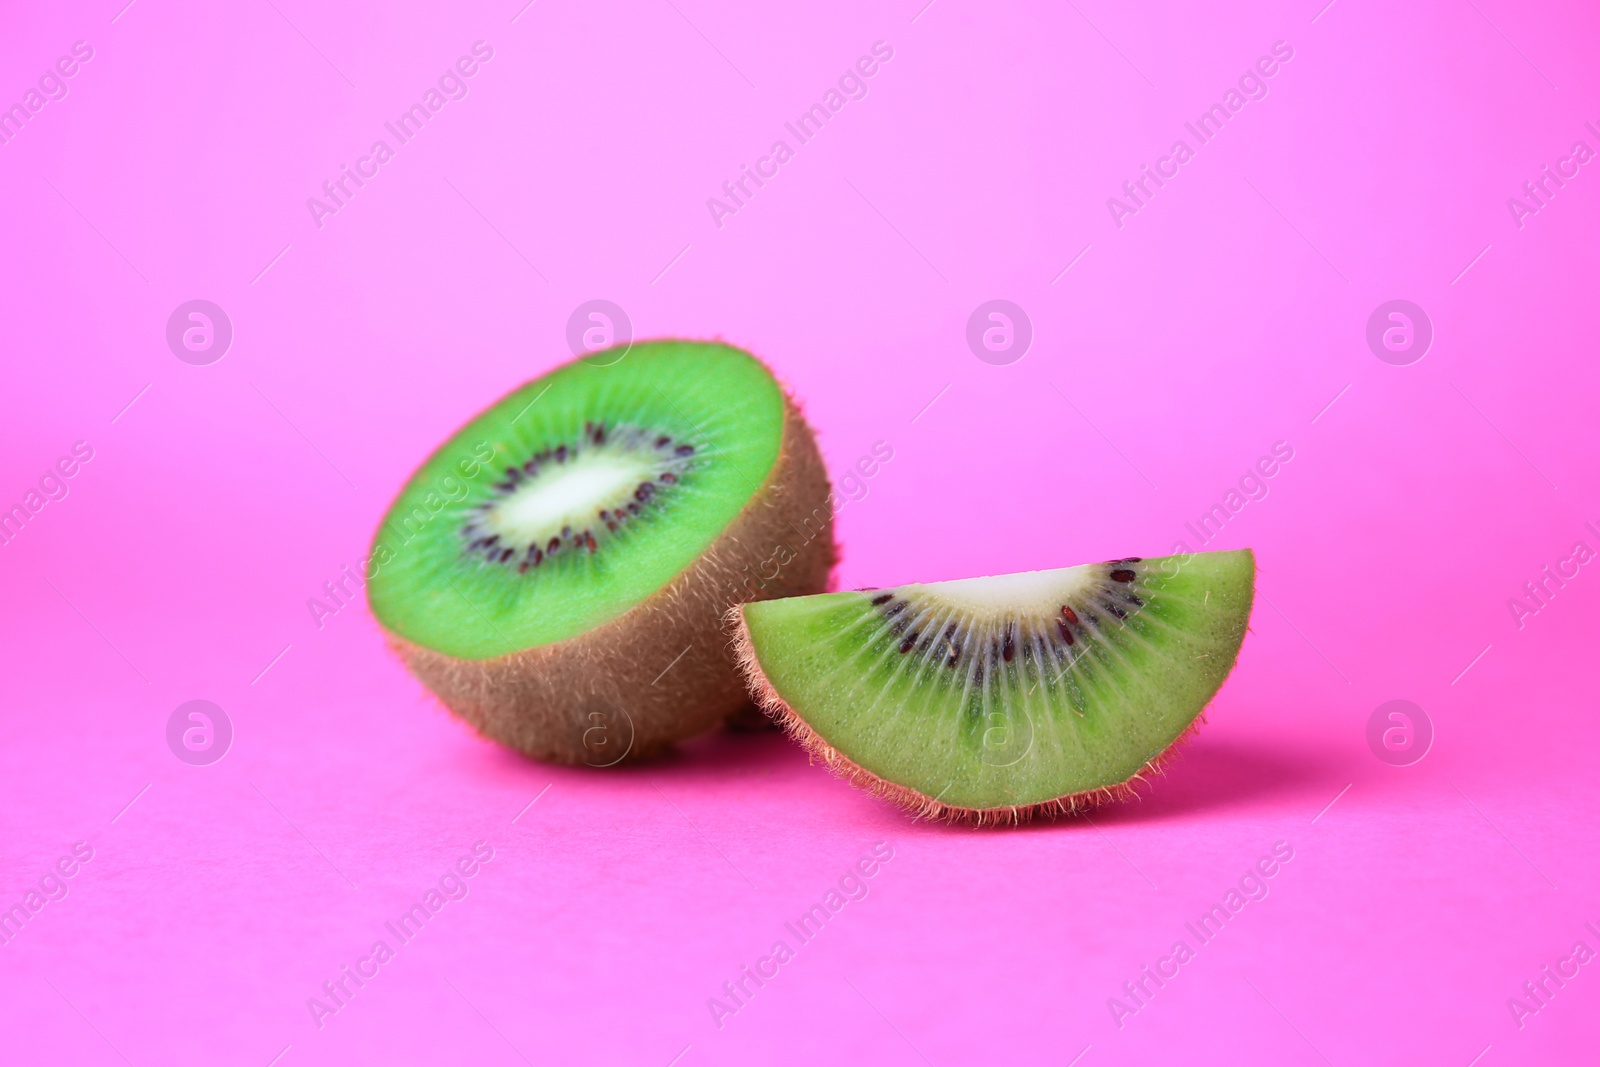 Photo of Cut fresh ripe kiwi on pink background